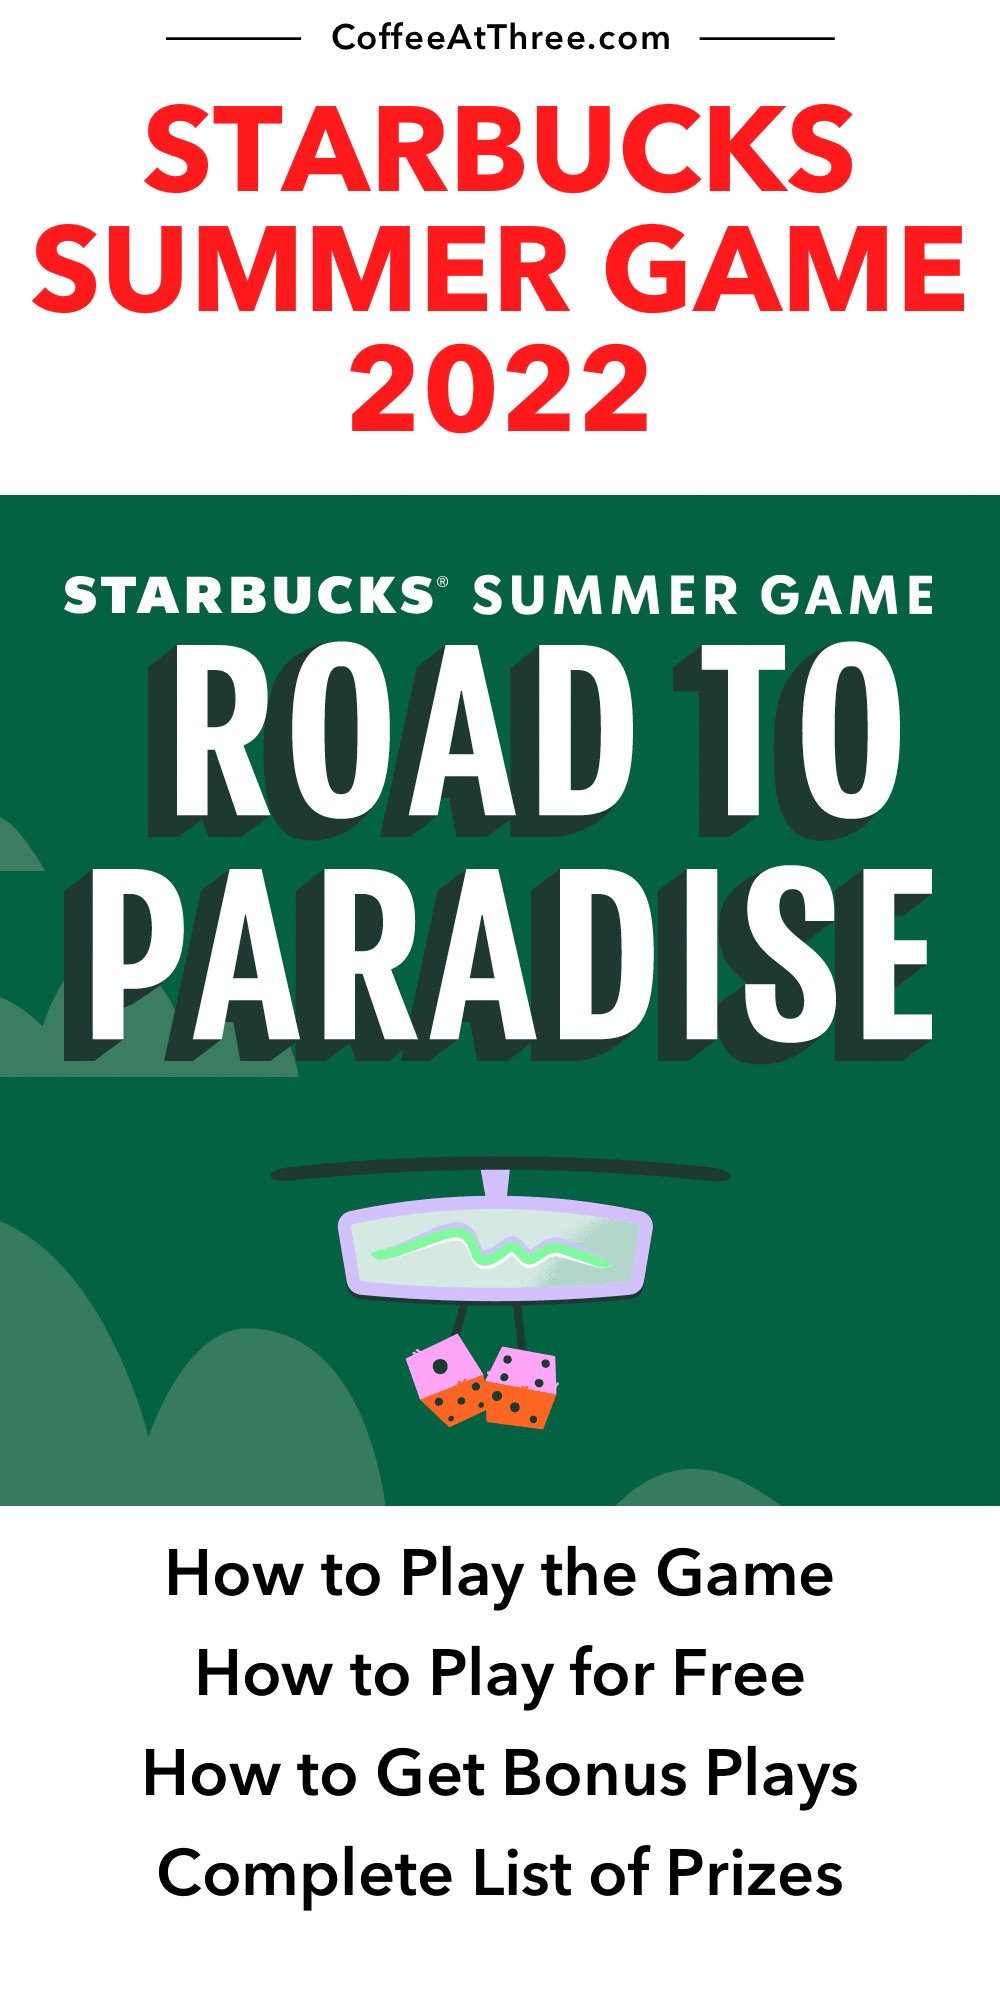 Starbucks Summer Game 2022: gratis spelen en prijzen